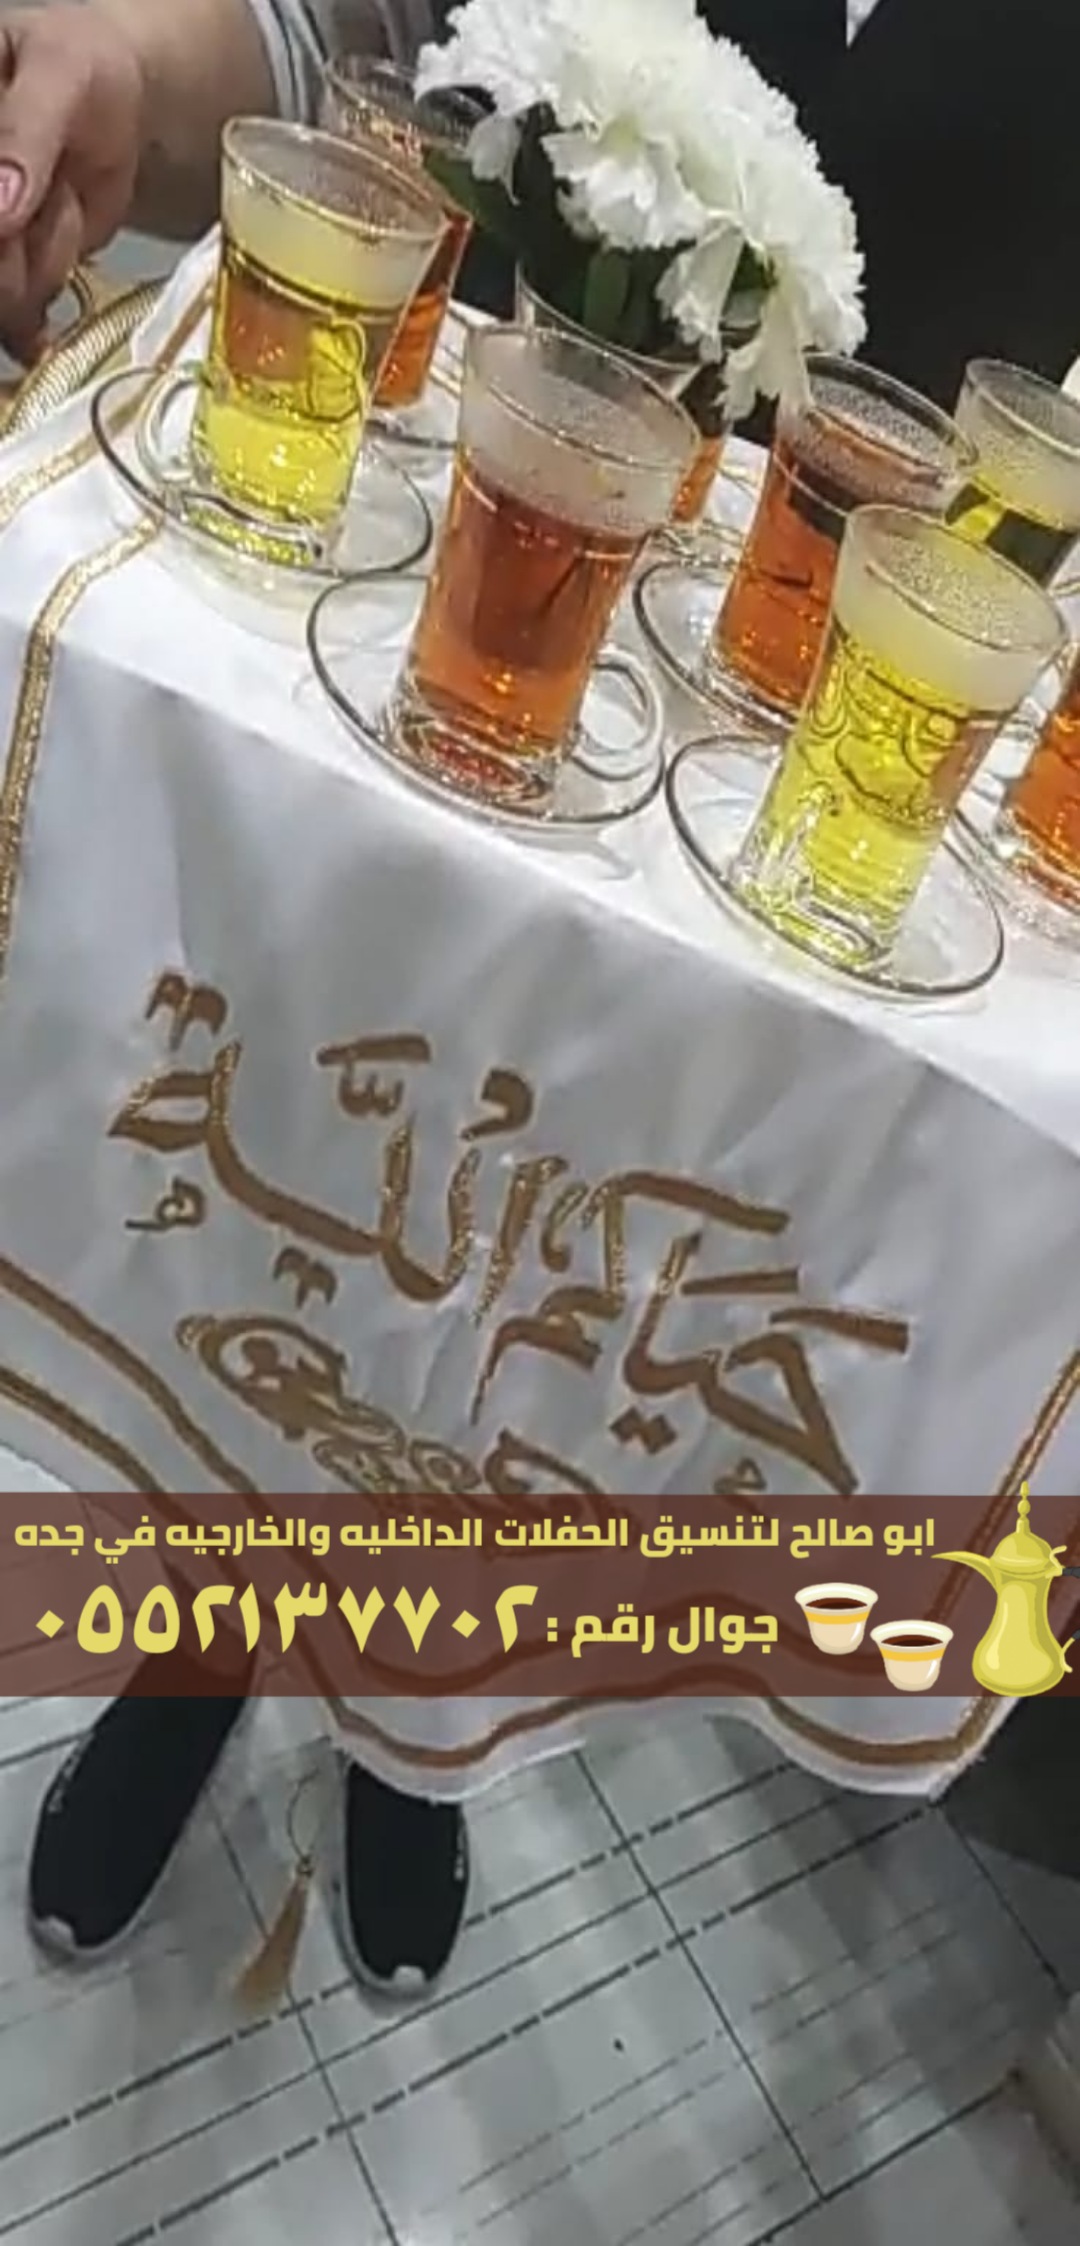 صبابابين قهوة رجال ونساء في جدة, 0552137702 P_24561ogj81